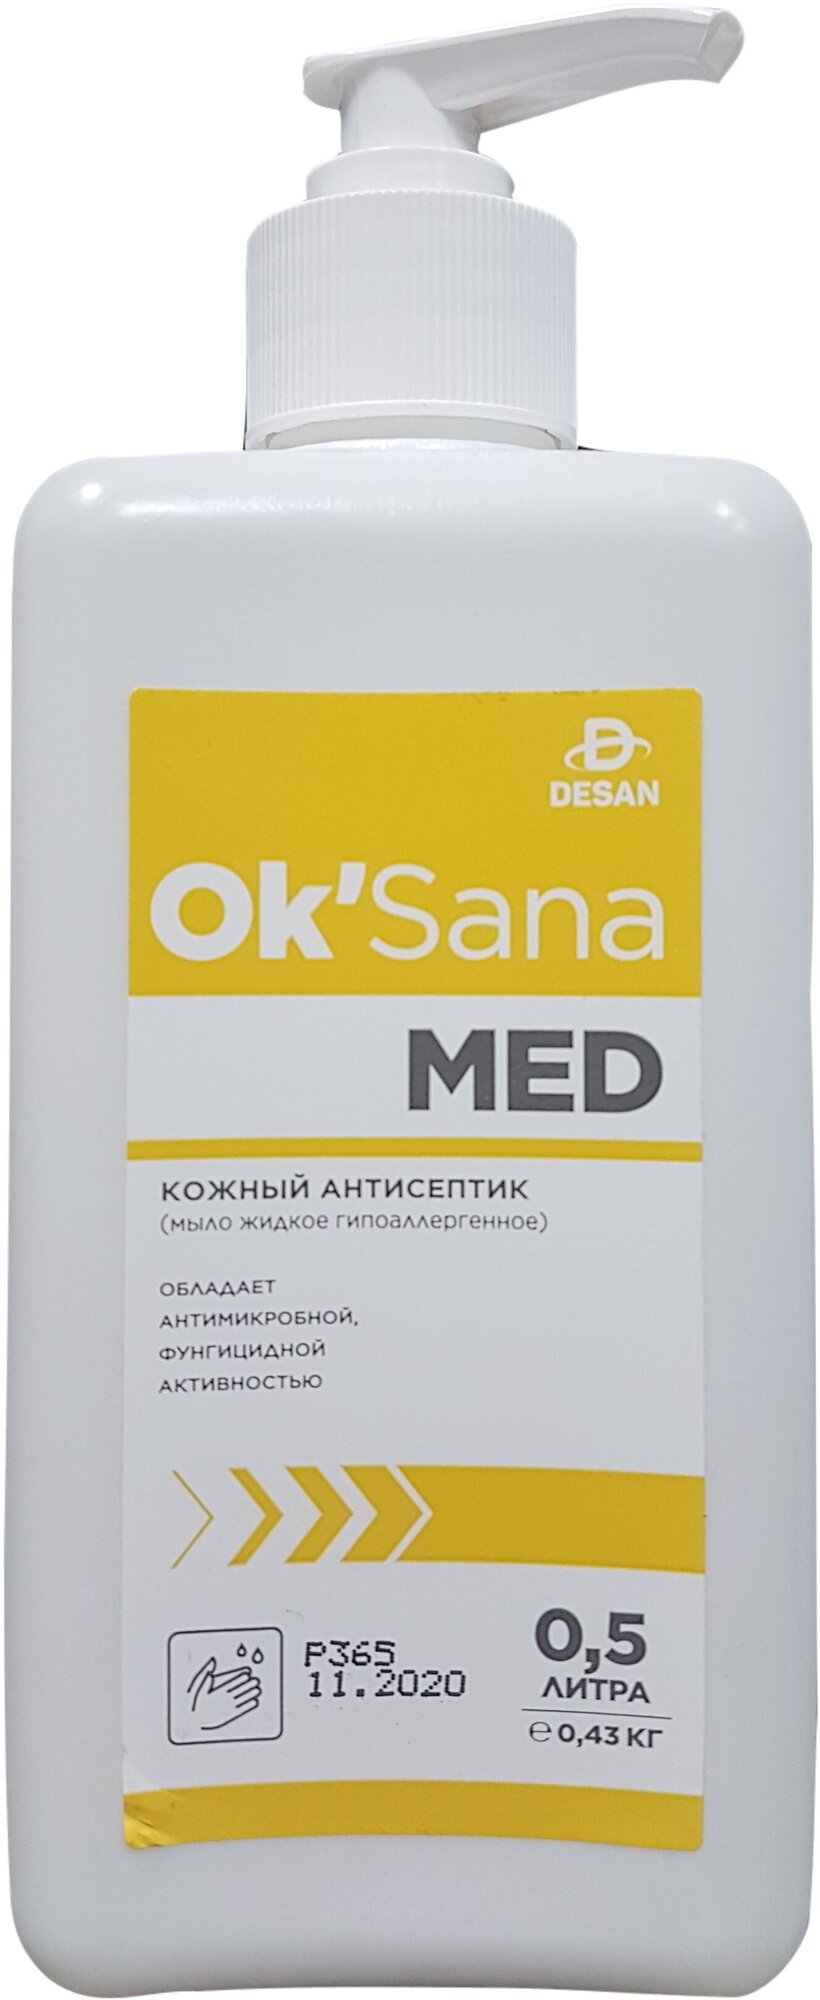 Дезинфицирующее жидкое мыло OK'Sana Med (ОК'Сана Мед) 500 мл. с дозатором